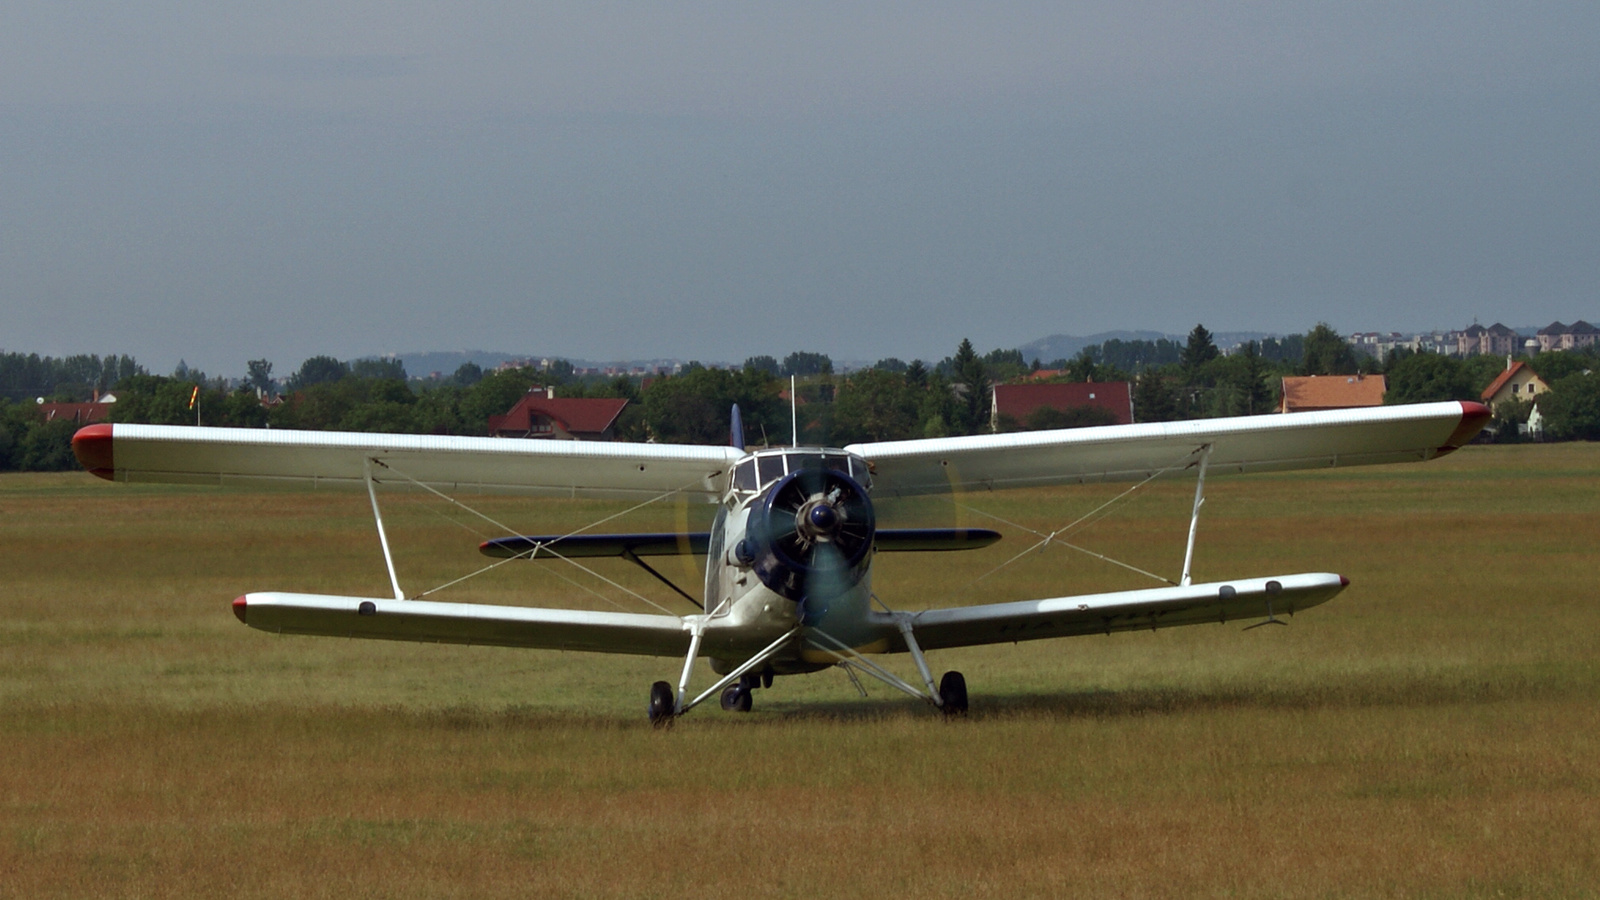 MALEV Aero Club  (HA-YHF)